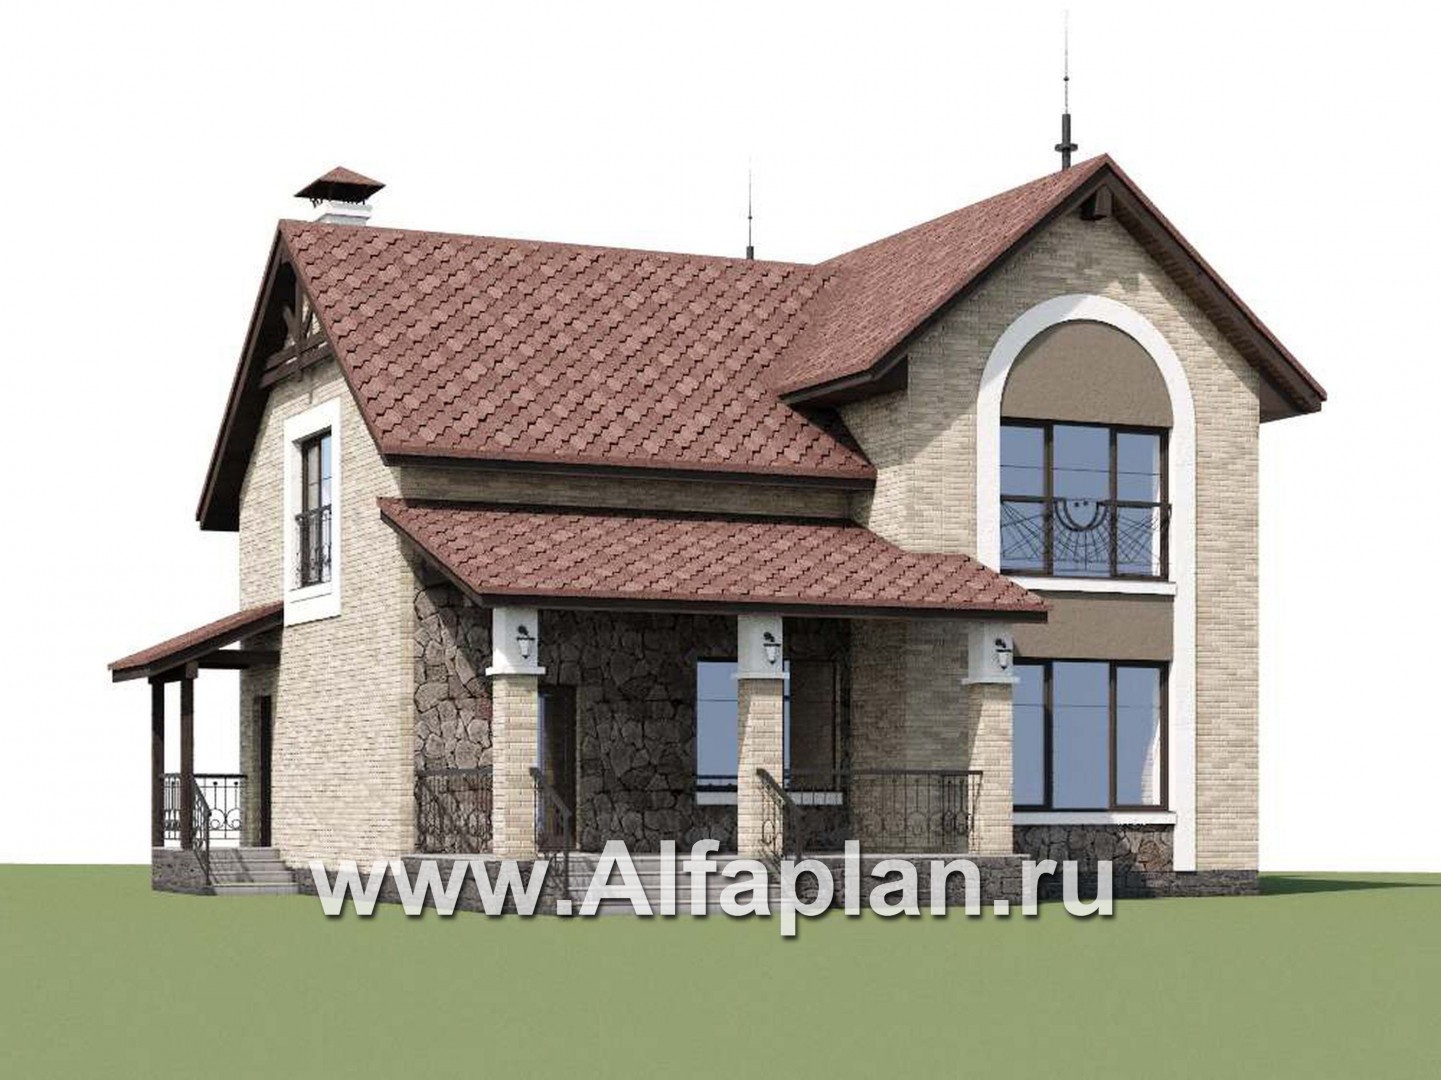 Проекты домов Альфаплан - «Огни залива» - проект дома с открытой планировкой - дополнительное изображение №1